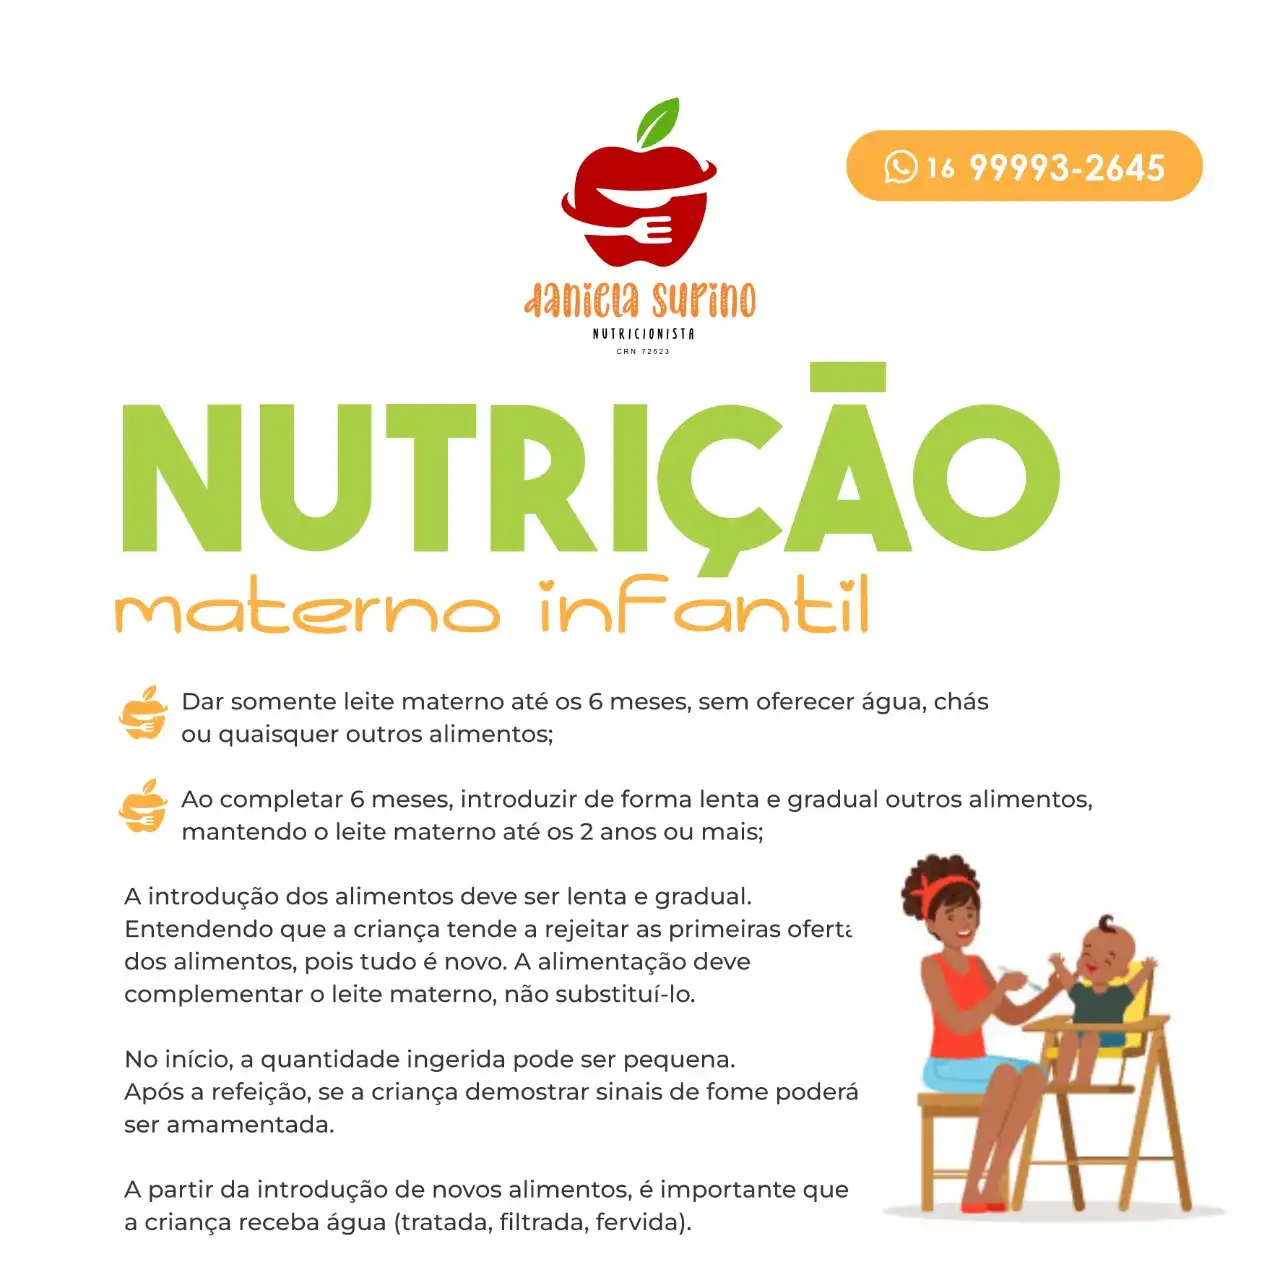 
Propaganda Nutrição Materno Infantil feita para Nutricionista



